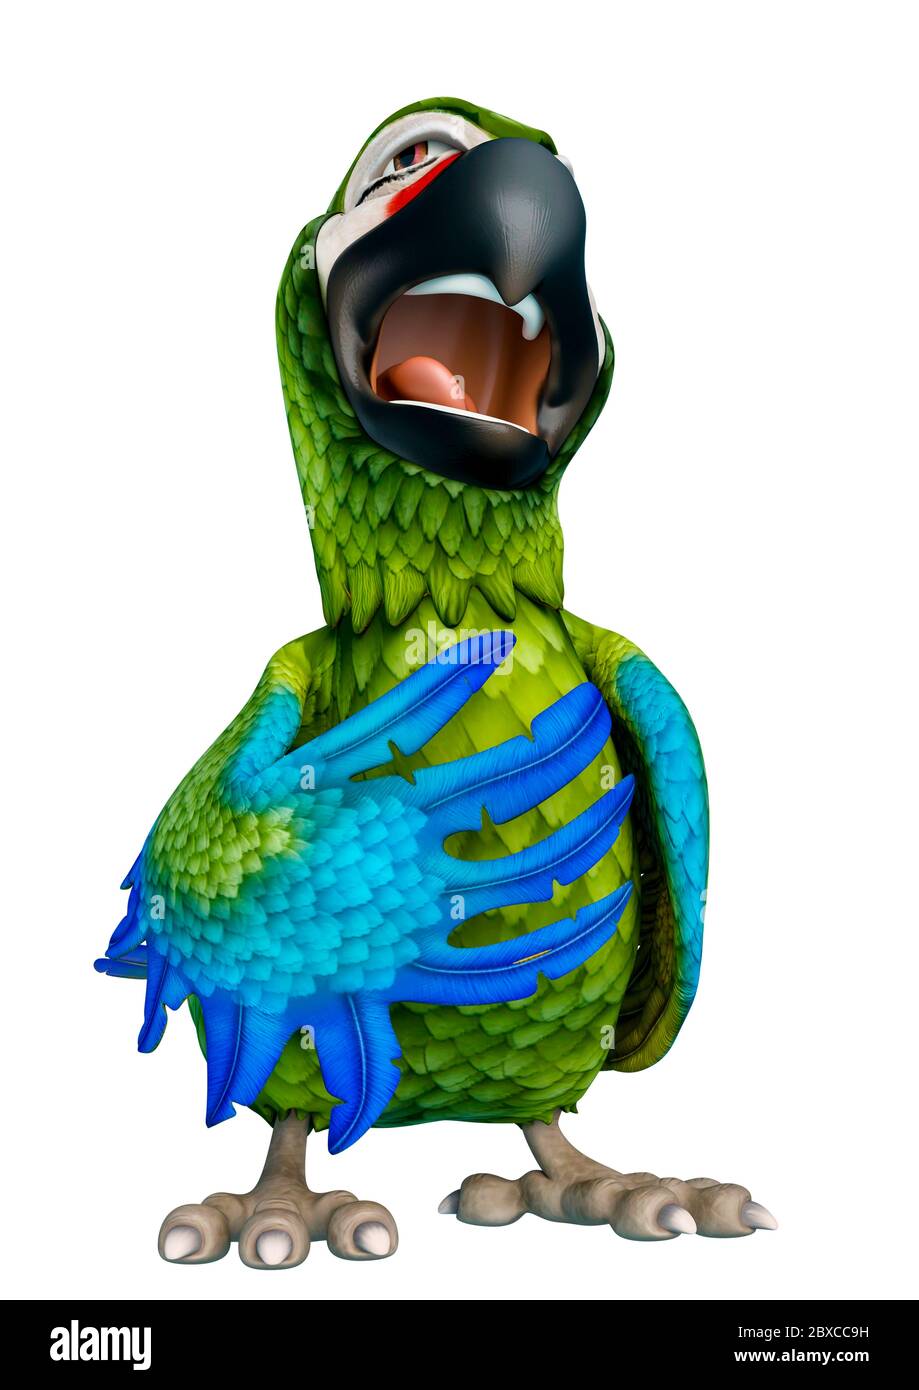 Cartoon singing bird hi-res stock photography and images - Alamy